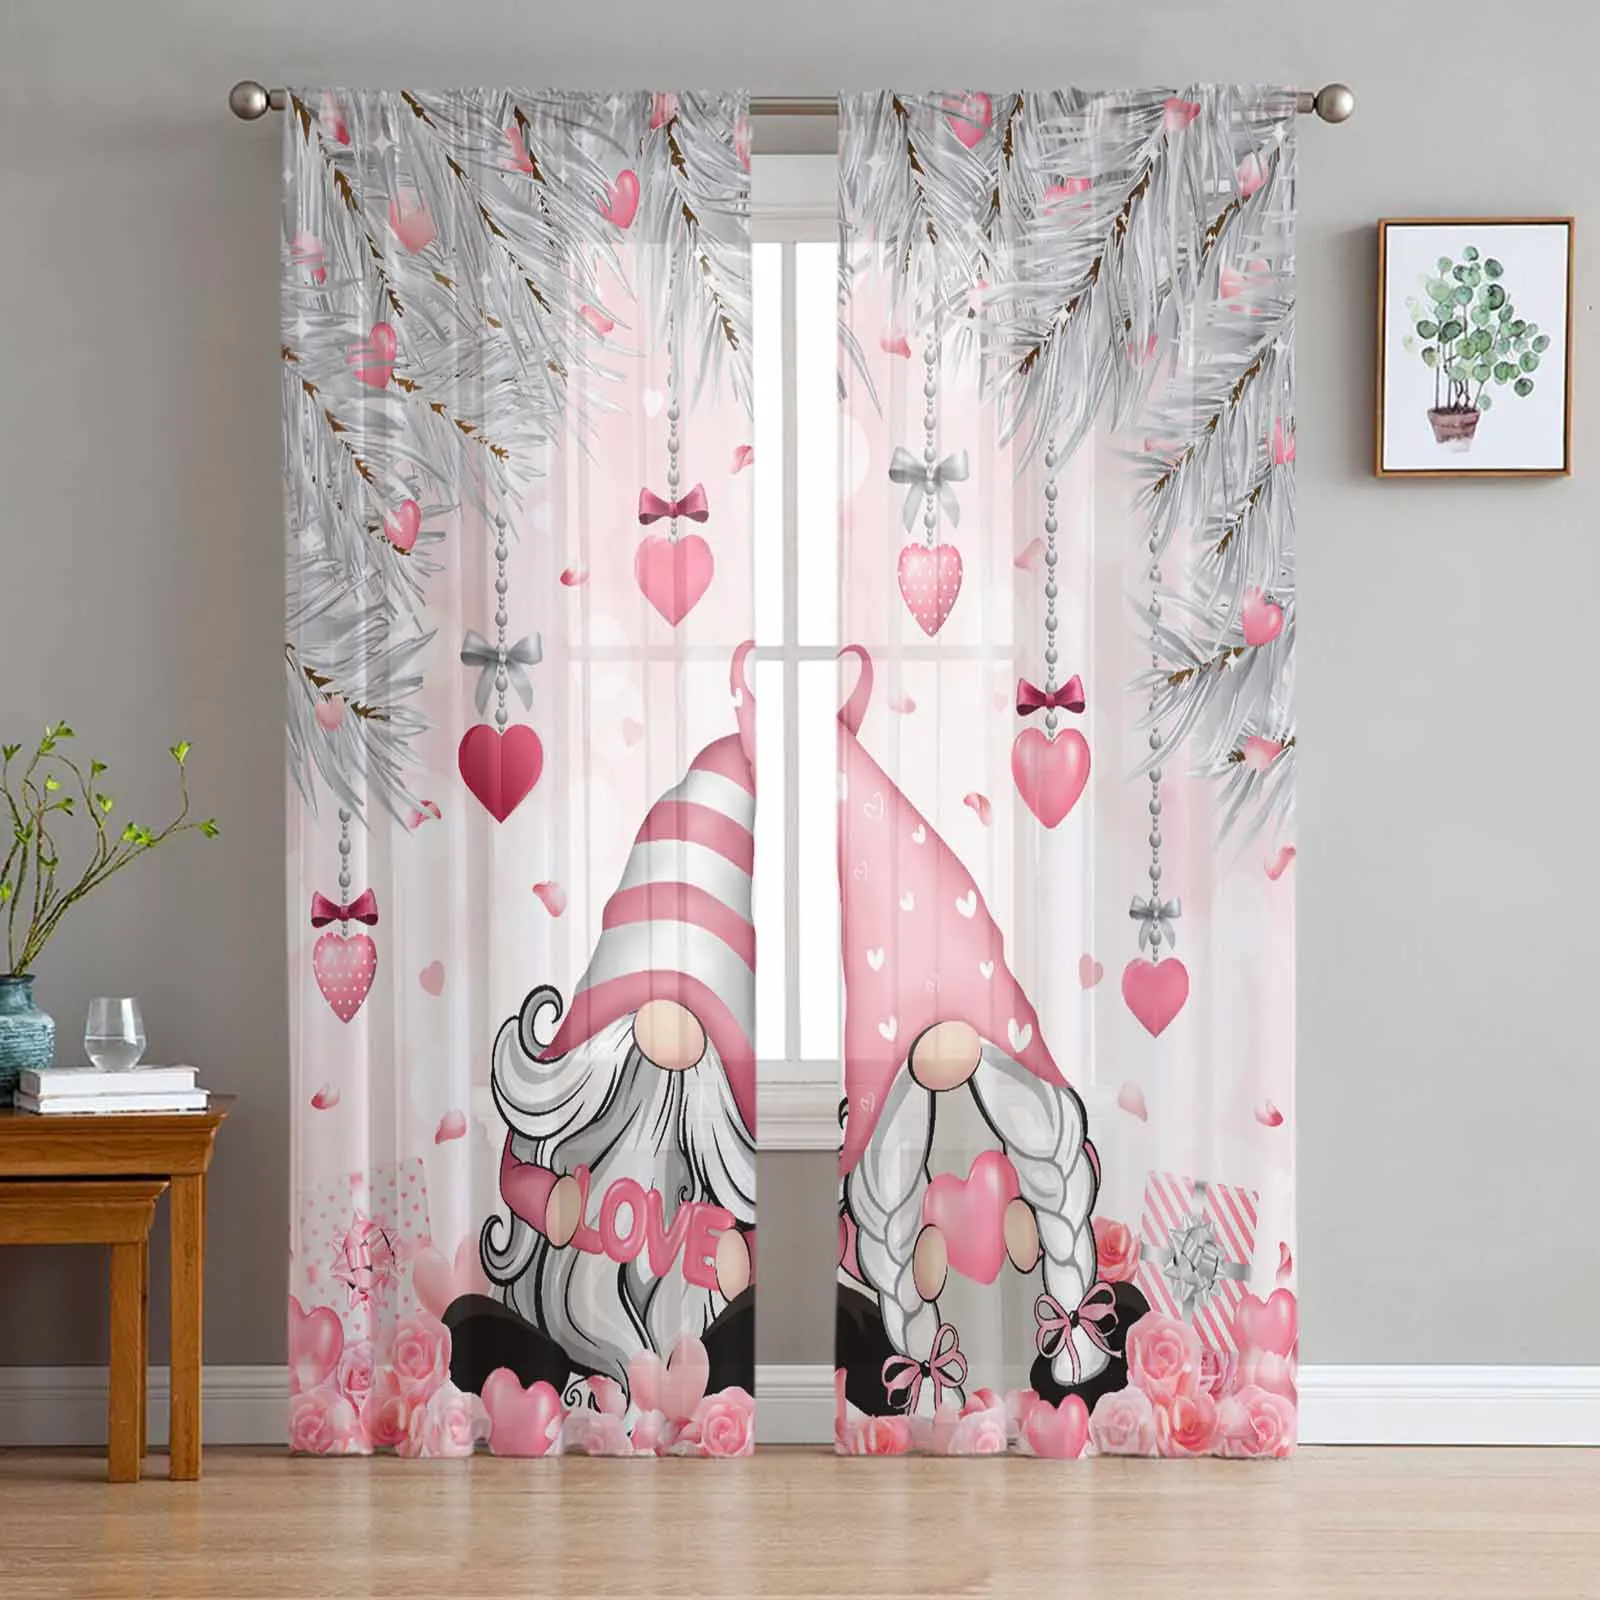 

Тюлевые шторы на День святого Валентина, розовые розы, сердца, гном, тюлевые занавески для гостиной, кухни, украшение для окна, зеркальные занавески